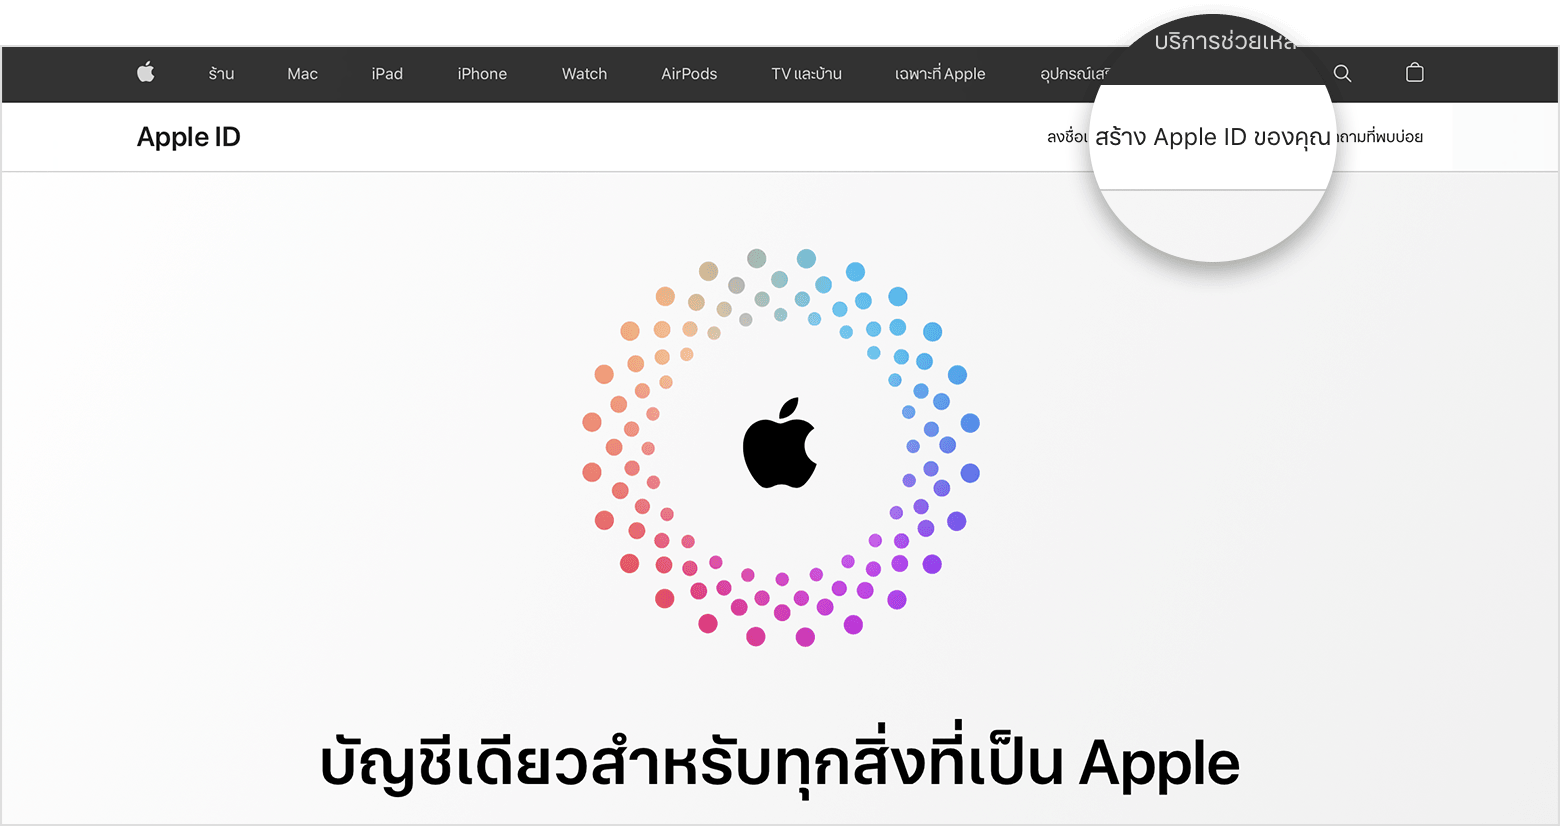 หน้าจอเว็บที่แสดงลิงก์สำหรับสร้าง Apple ID 